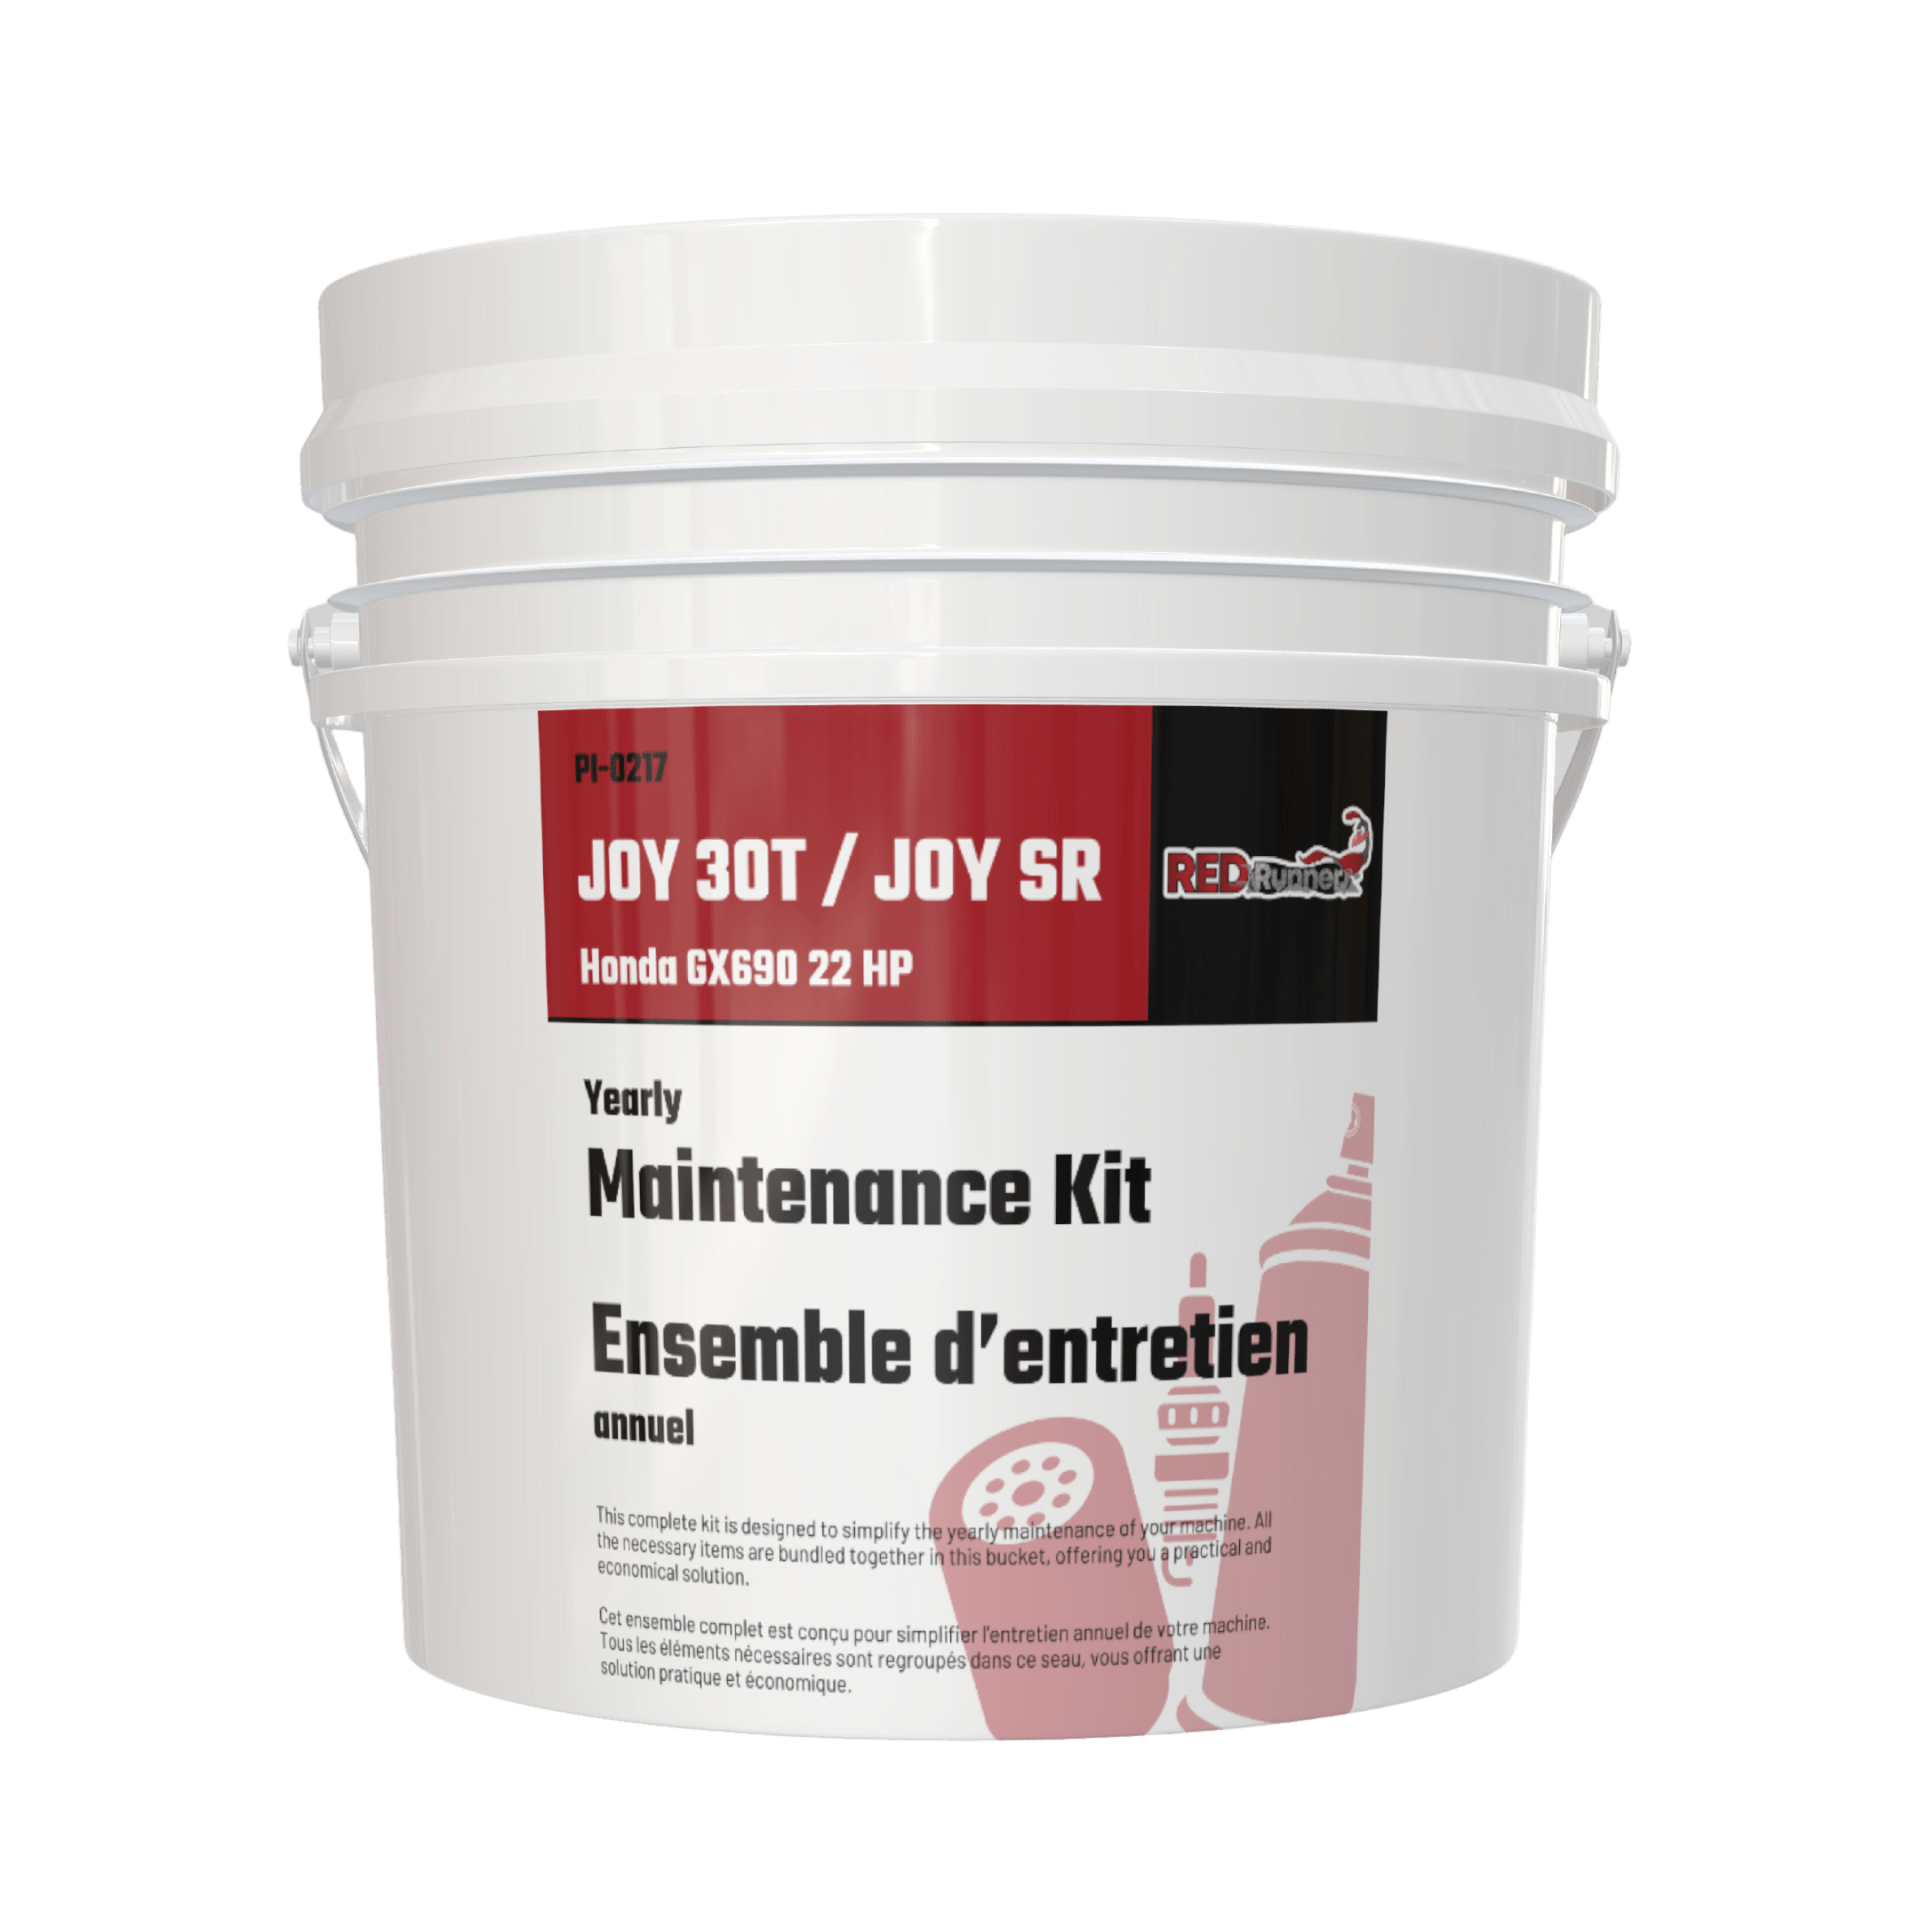 Maintenance Kit for Red Runner JOY 30T & JOY SR